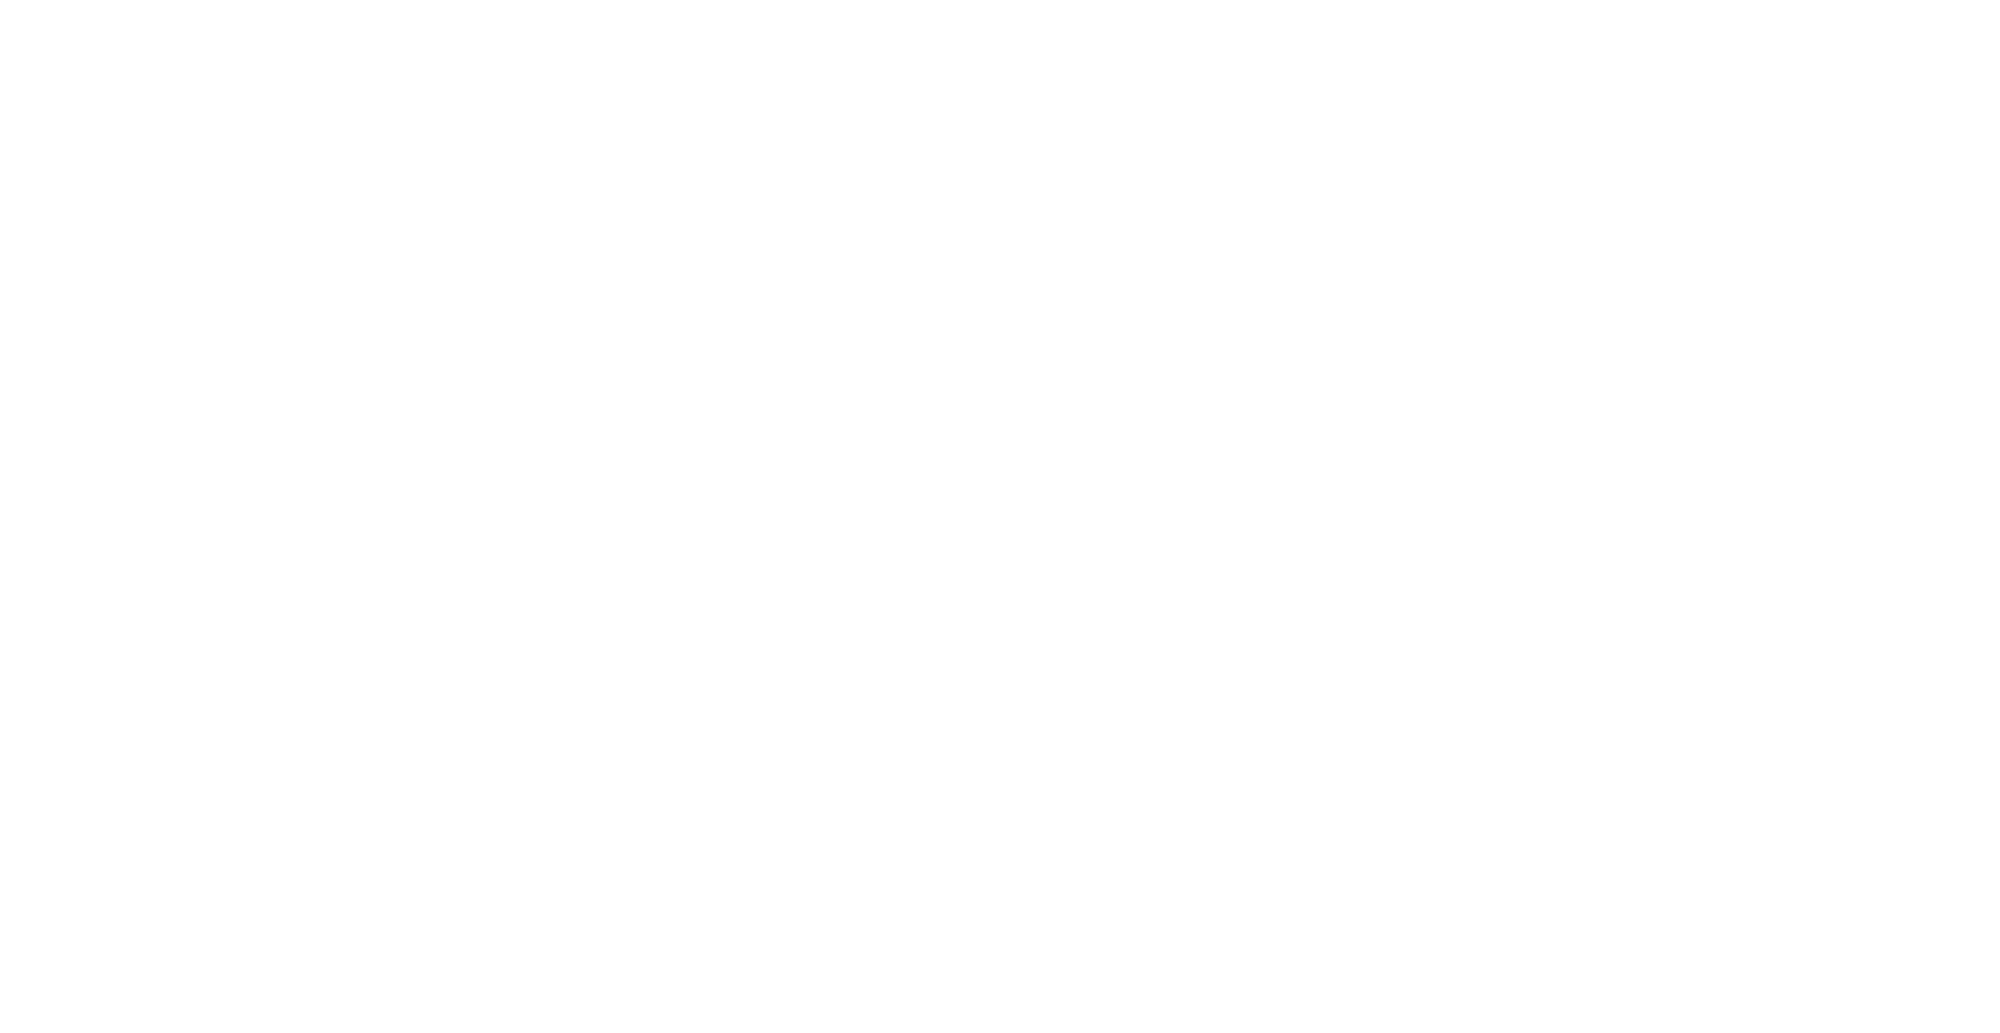 A.D. Sims, LLC.